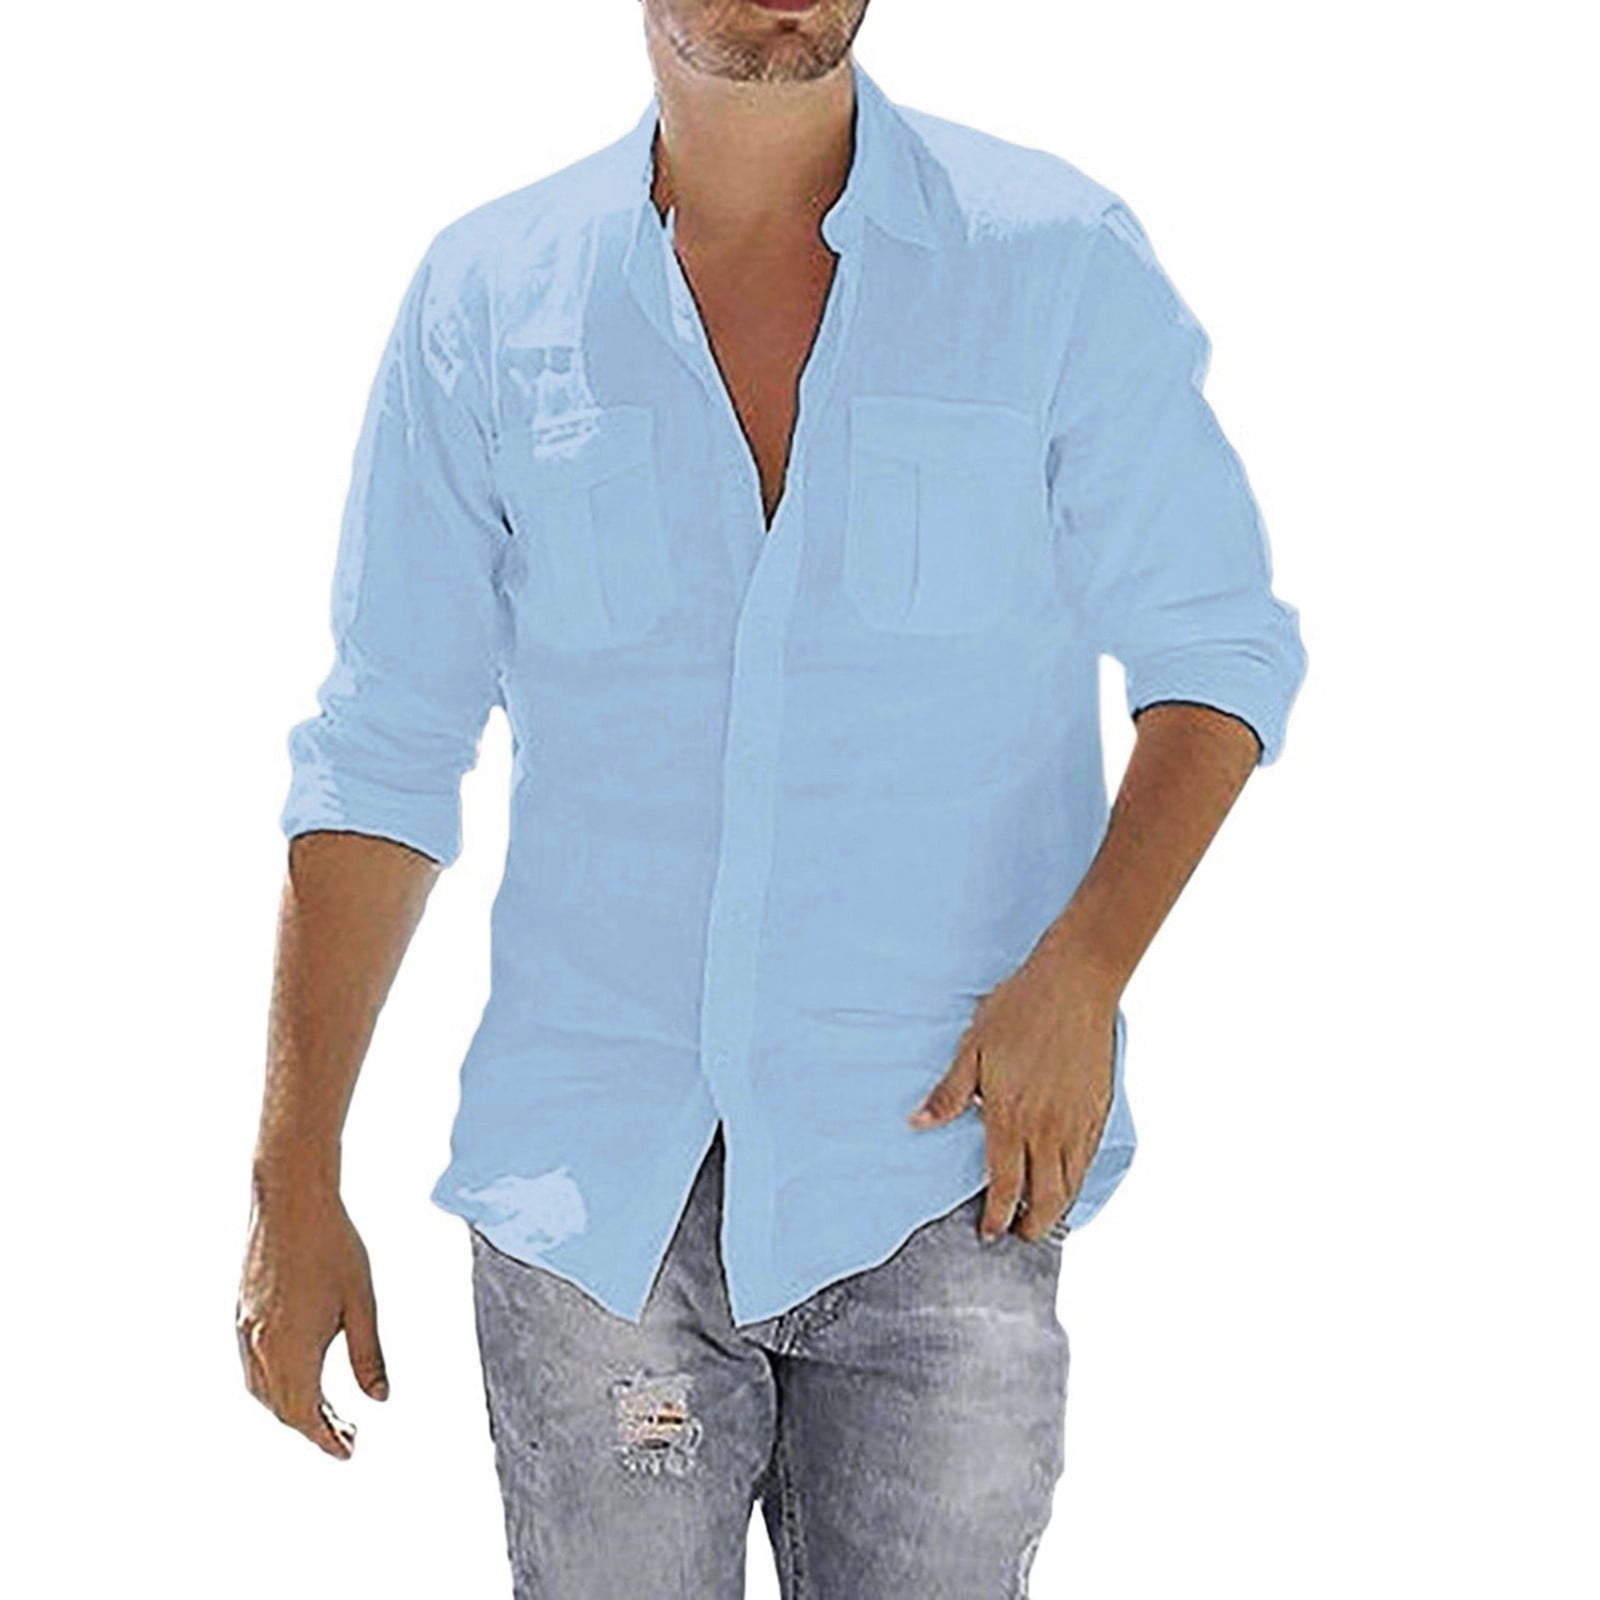 Blouse Long Shirts Solid Sleeve T Men's Tops Cotton Linen Retro Pocket  Baggy Men's blouse Men Dress Shirt And Tie Set 